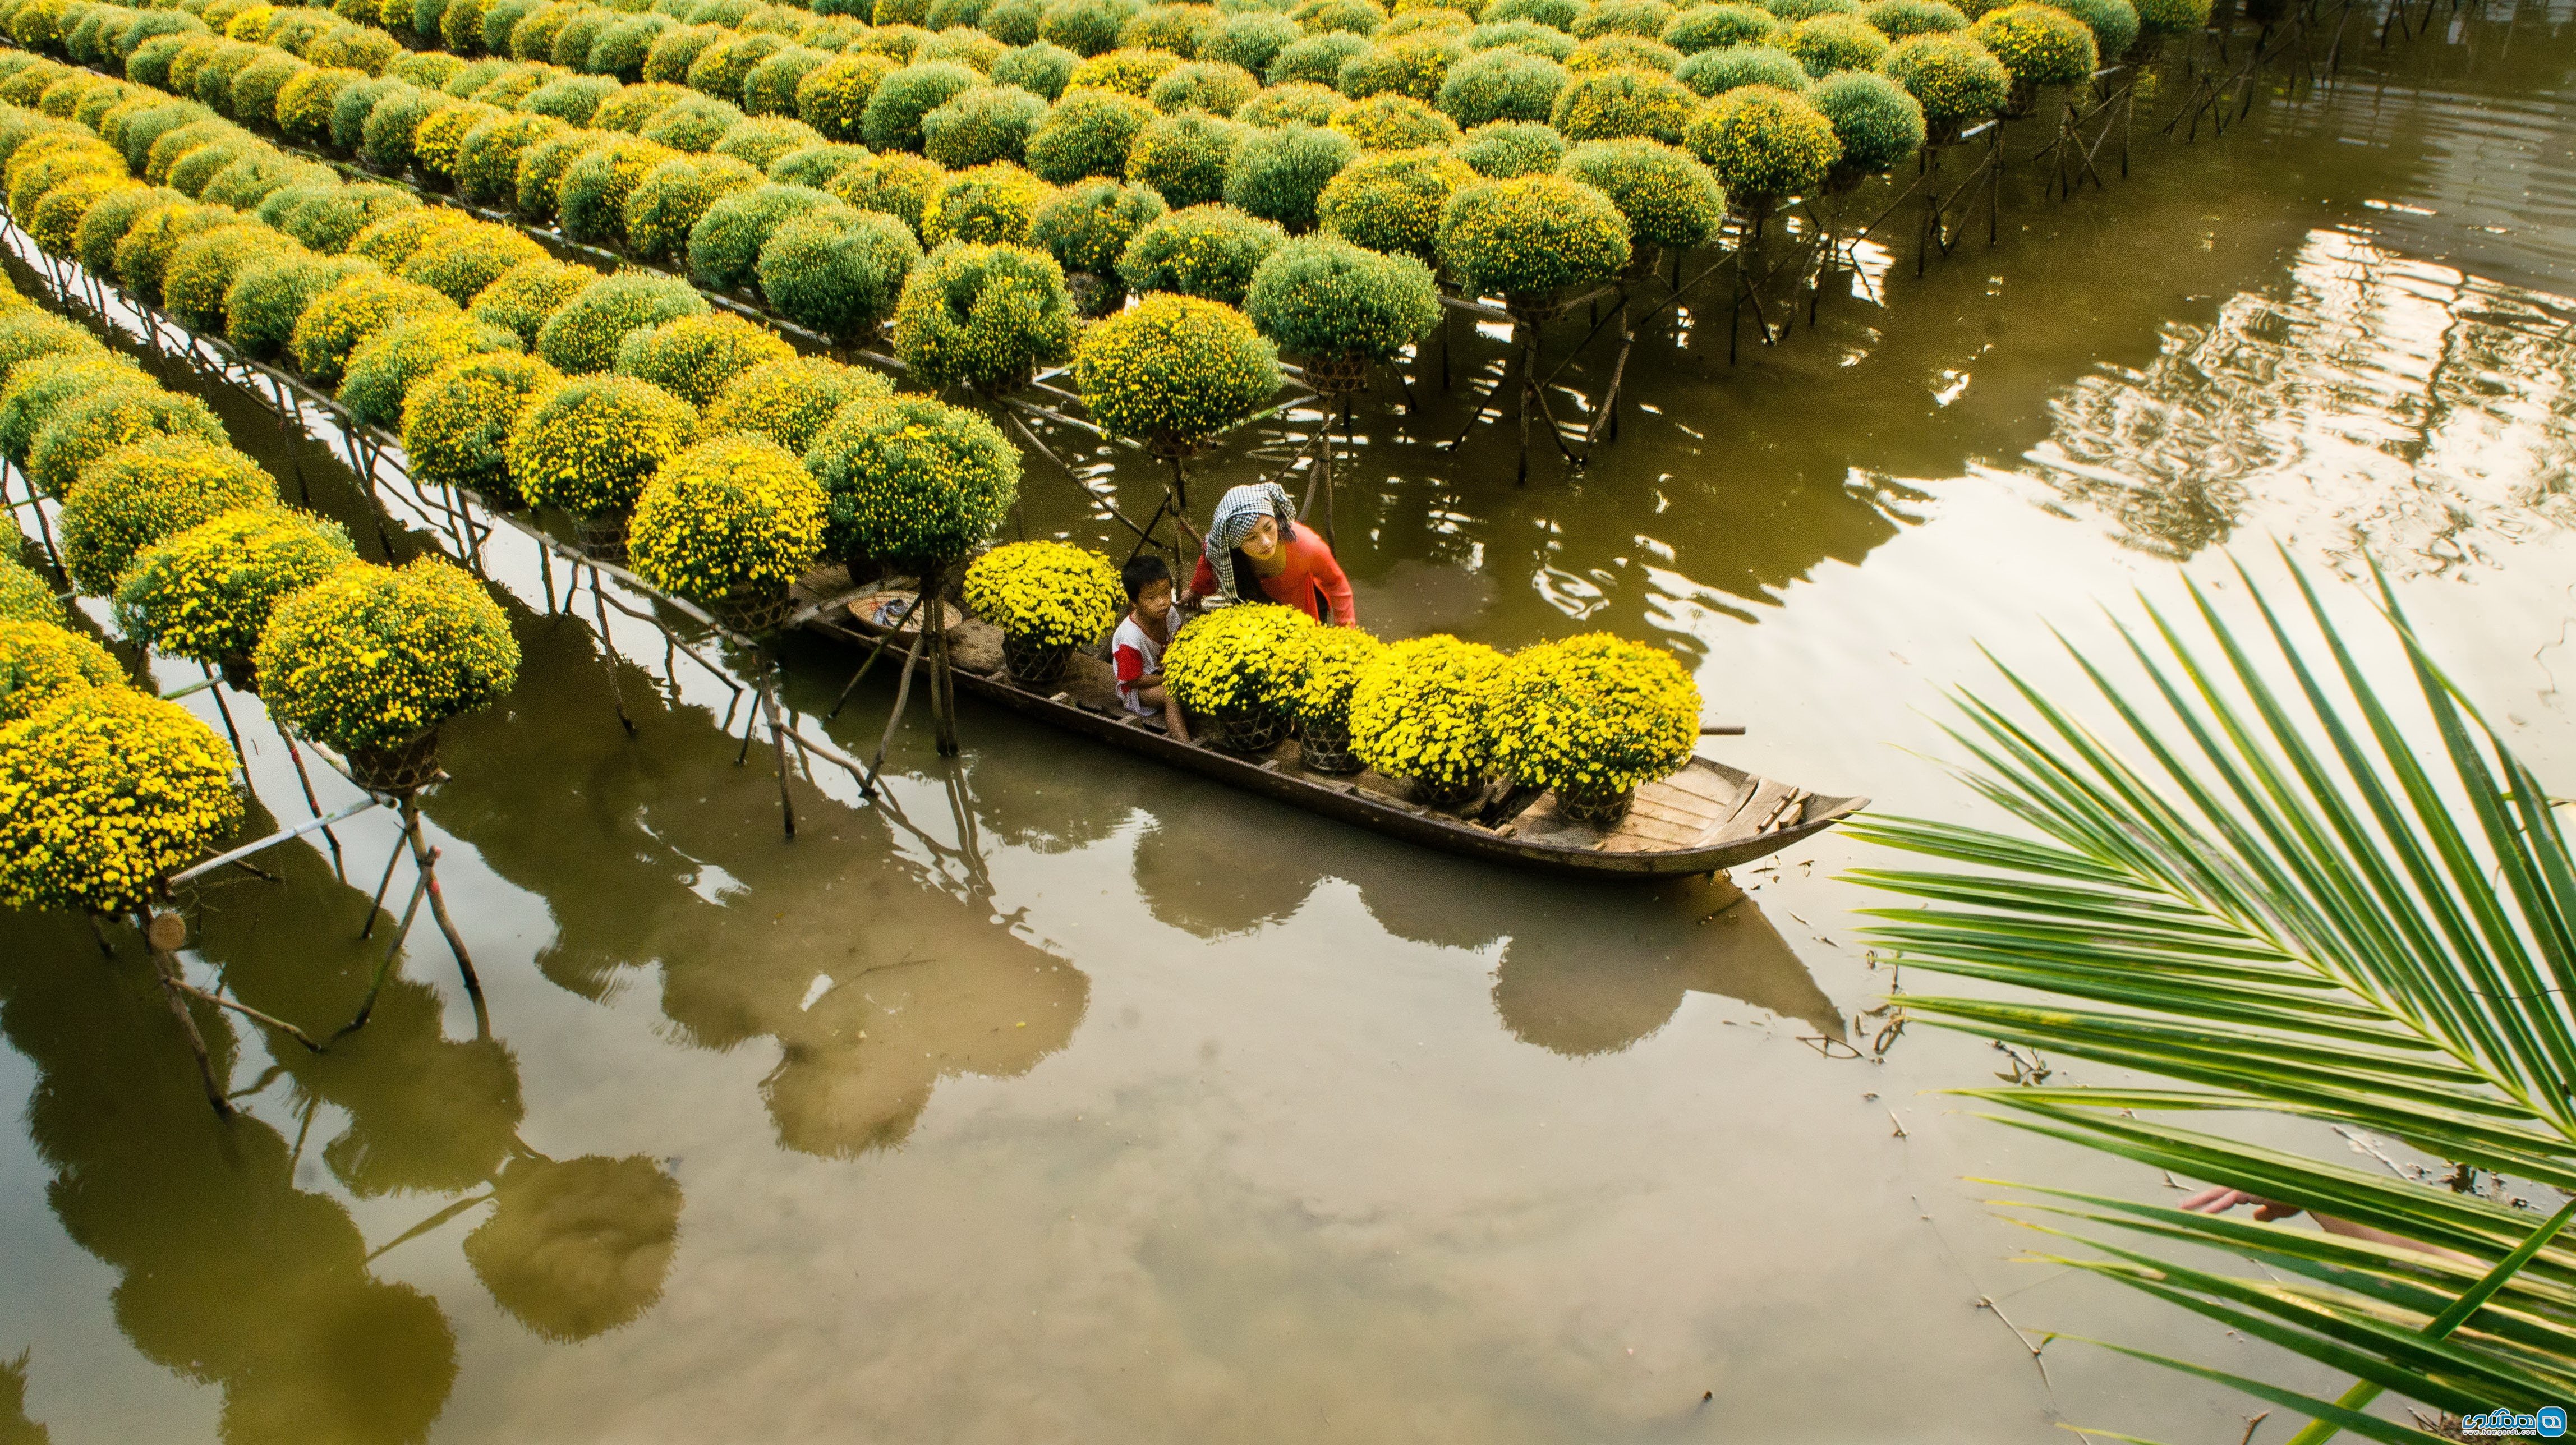  دلتای مکونگ ( Mekong Delta )3